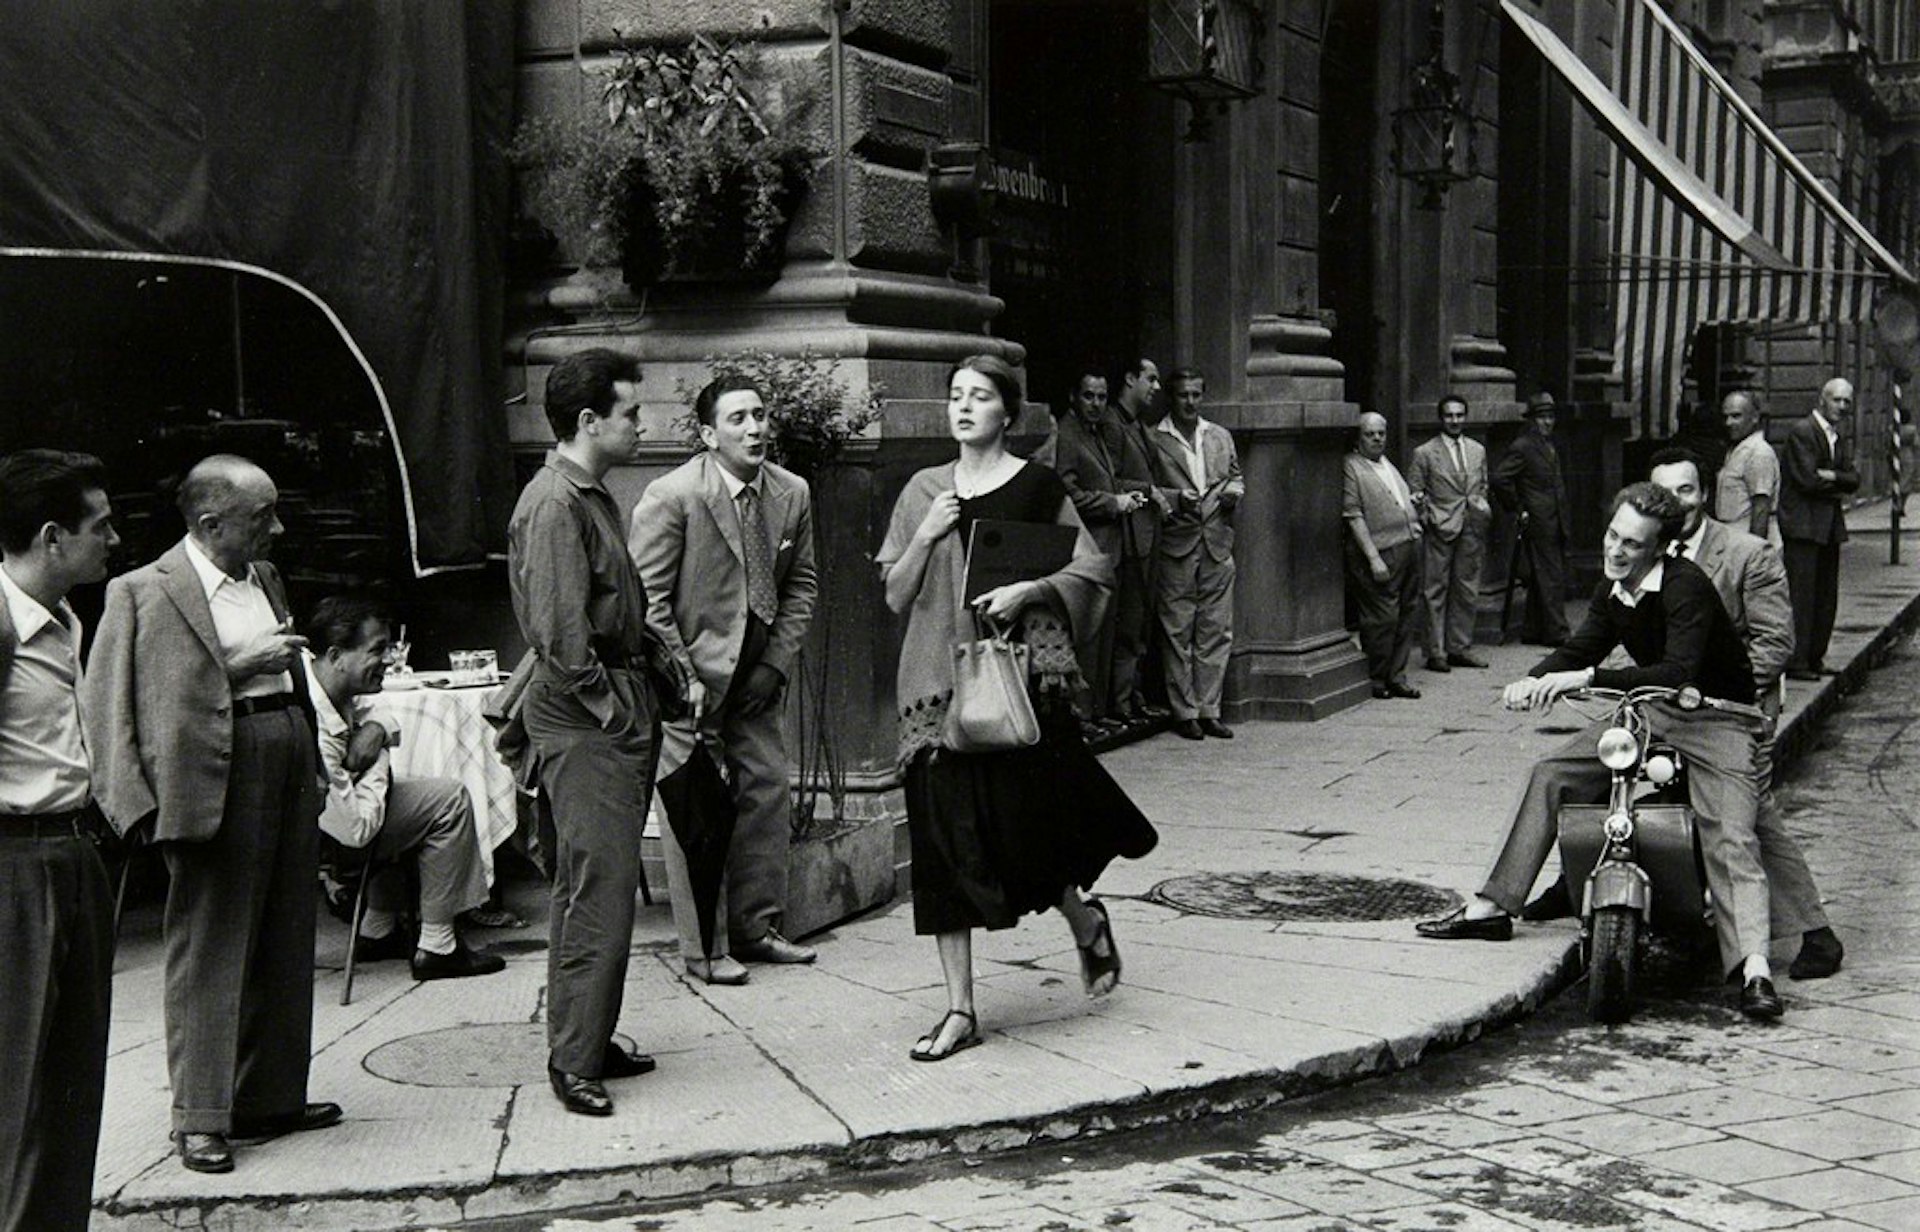 Ruth Orkin. American Girl in Italy, 1951